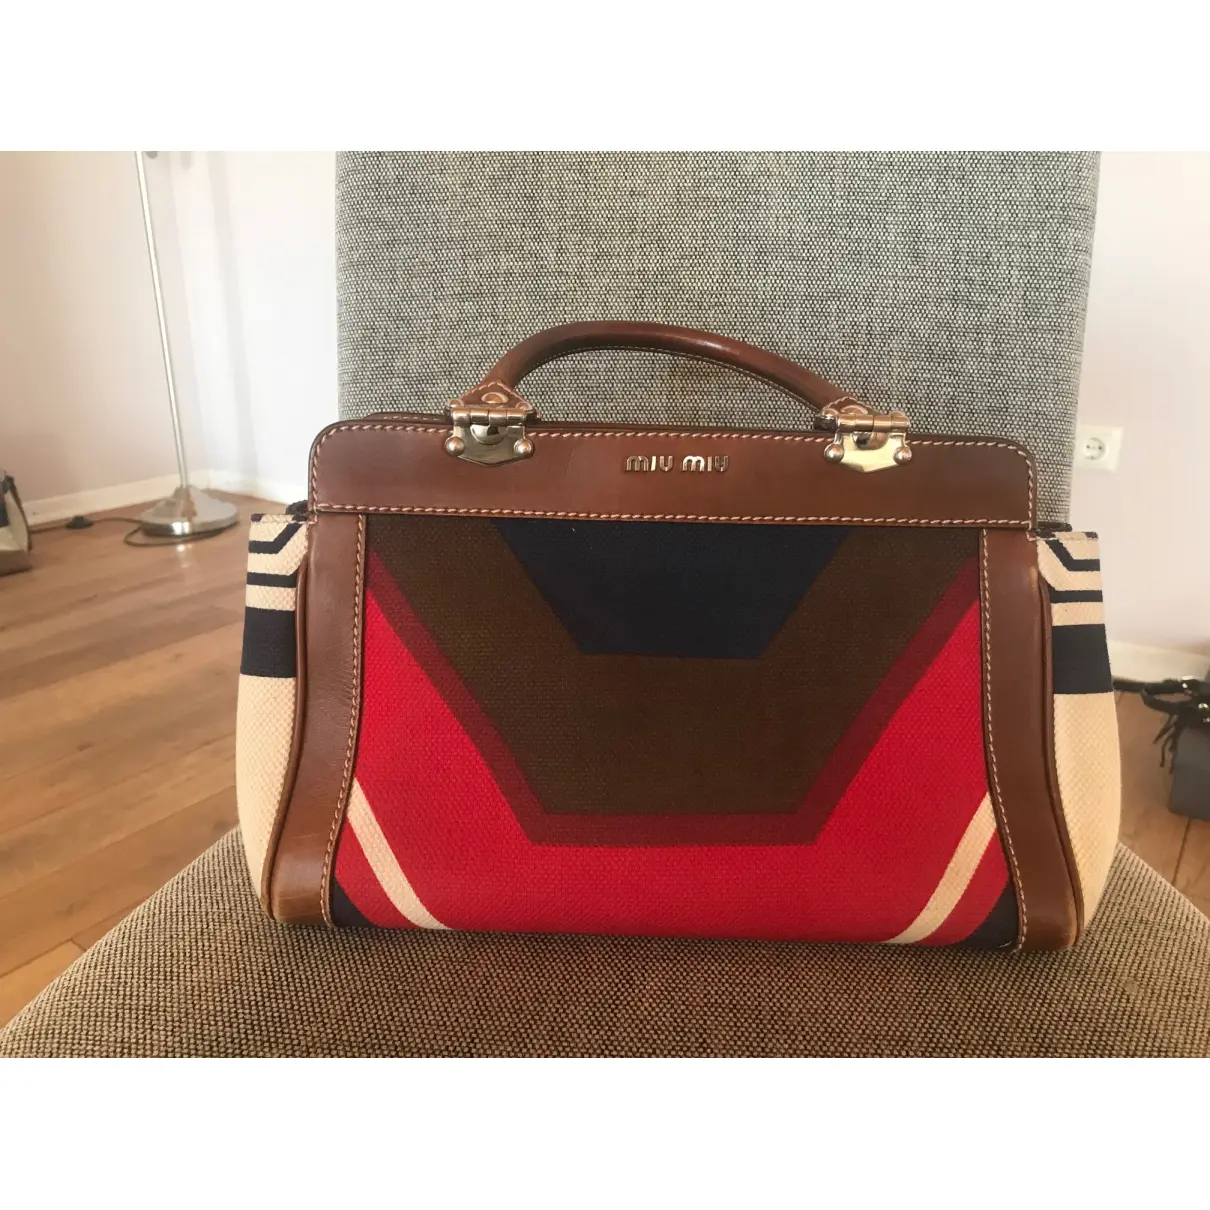 Buy Miu Miu Cloth handbag online - Vintage